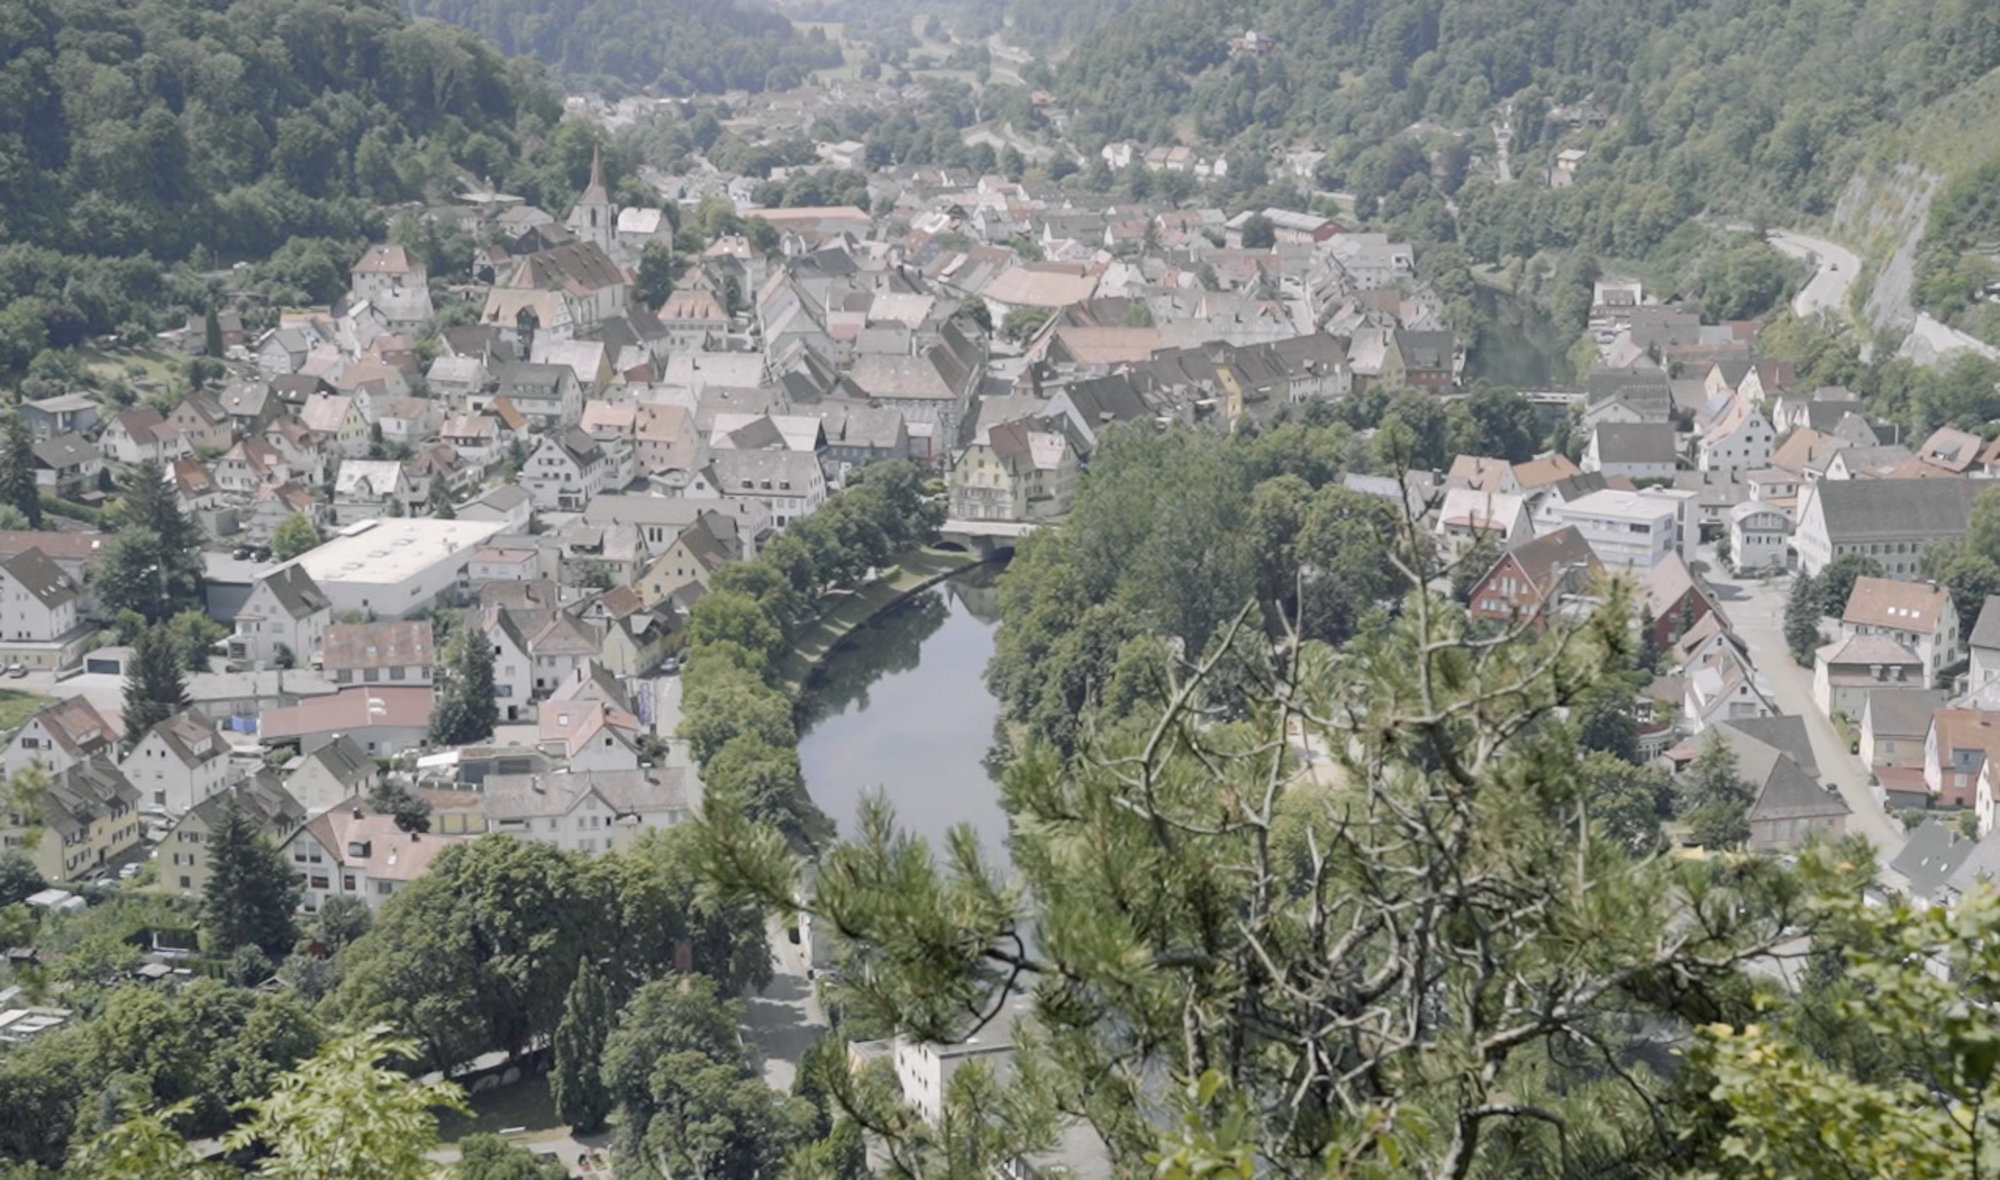 Bild aus der Filmdokumentation des Weiterkommen-Projekts "Kultur Hoch 10": Eine Panoramaansicht über die Stadt Sulz am Neckar.